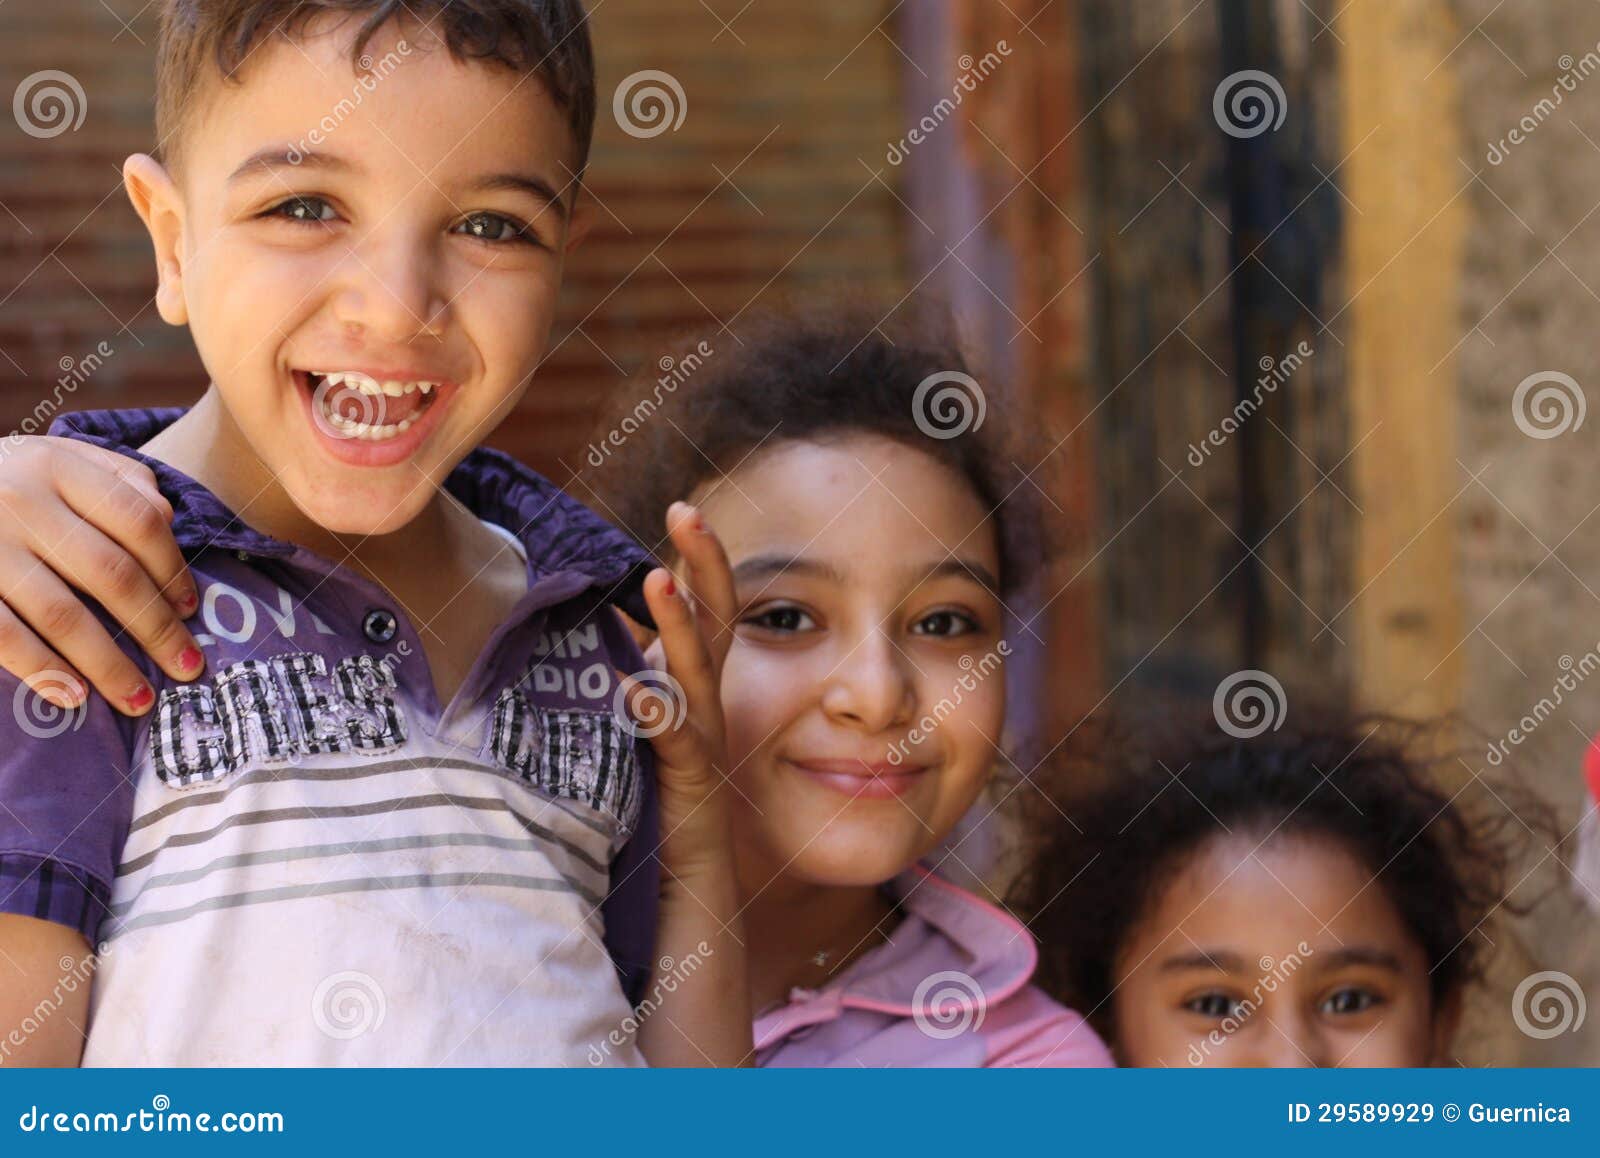 Porträt der glücklichen spielenden und lachenden Kinder, Straßenhintergrund in Giseh, Ägypten. Porträt der glücklichen Kinder, die, Straßenhintergrund in Giseh, Ägypten, Straßenhintergrund in Giseh, die glücklichen Kinder spielen in der Straße in Kairo, Ägypten spielen und lachen, scherzt spielend, ägyptische Gesichter